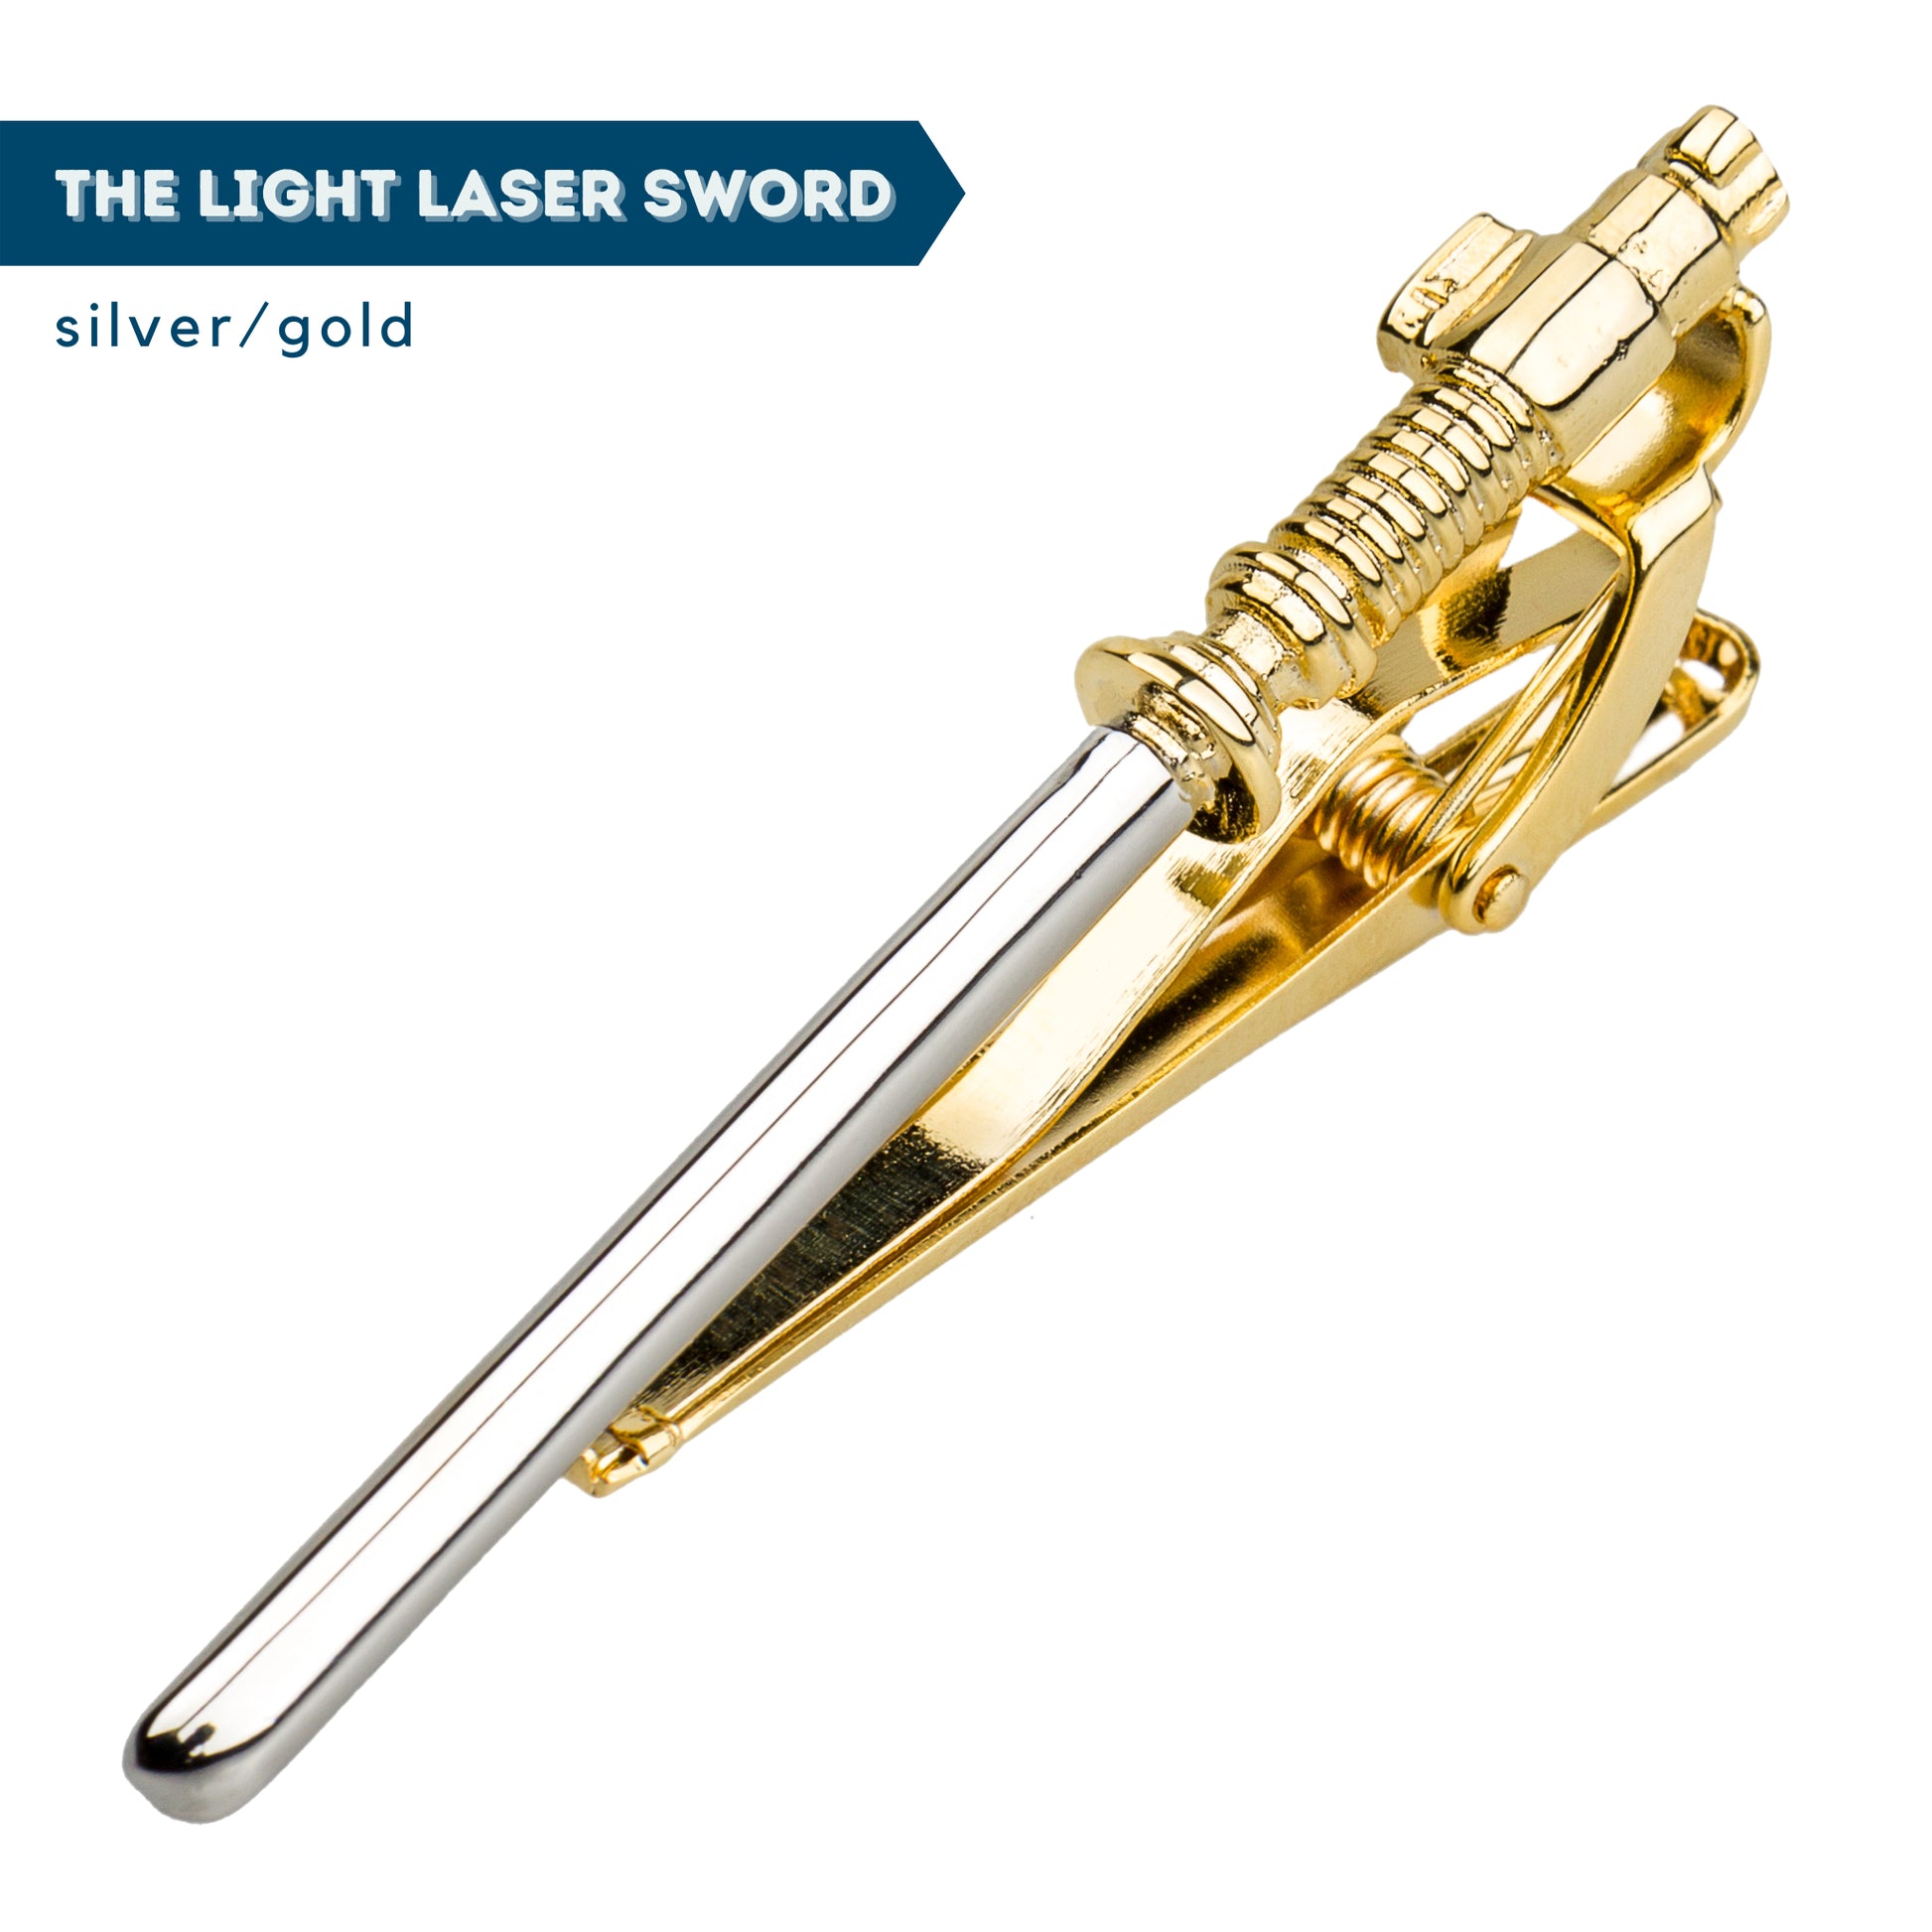 Rebel's Tie + Light Laser Sword